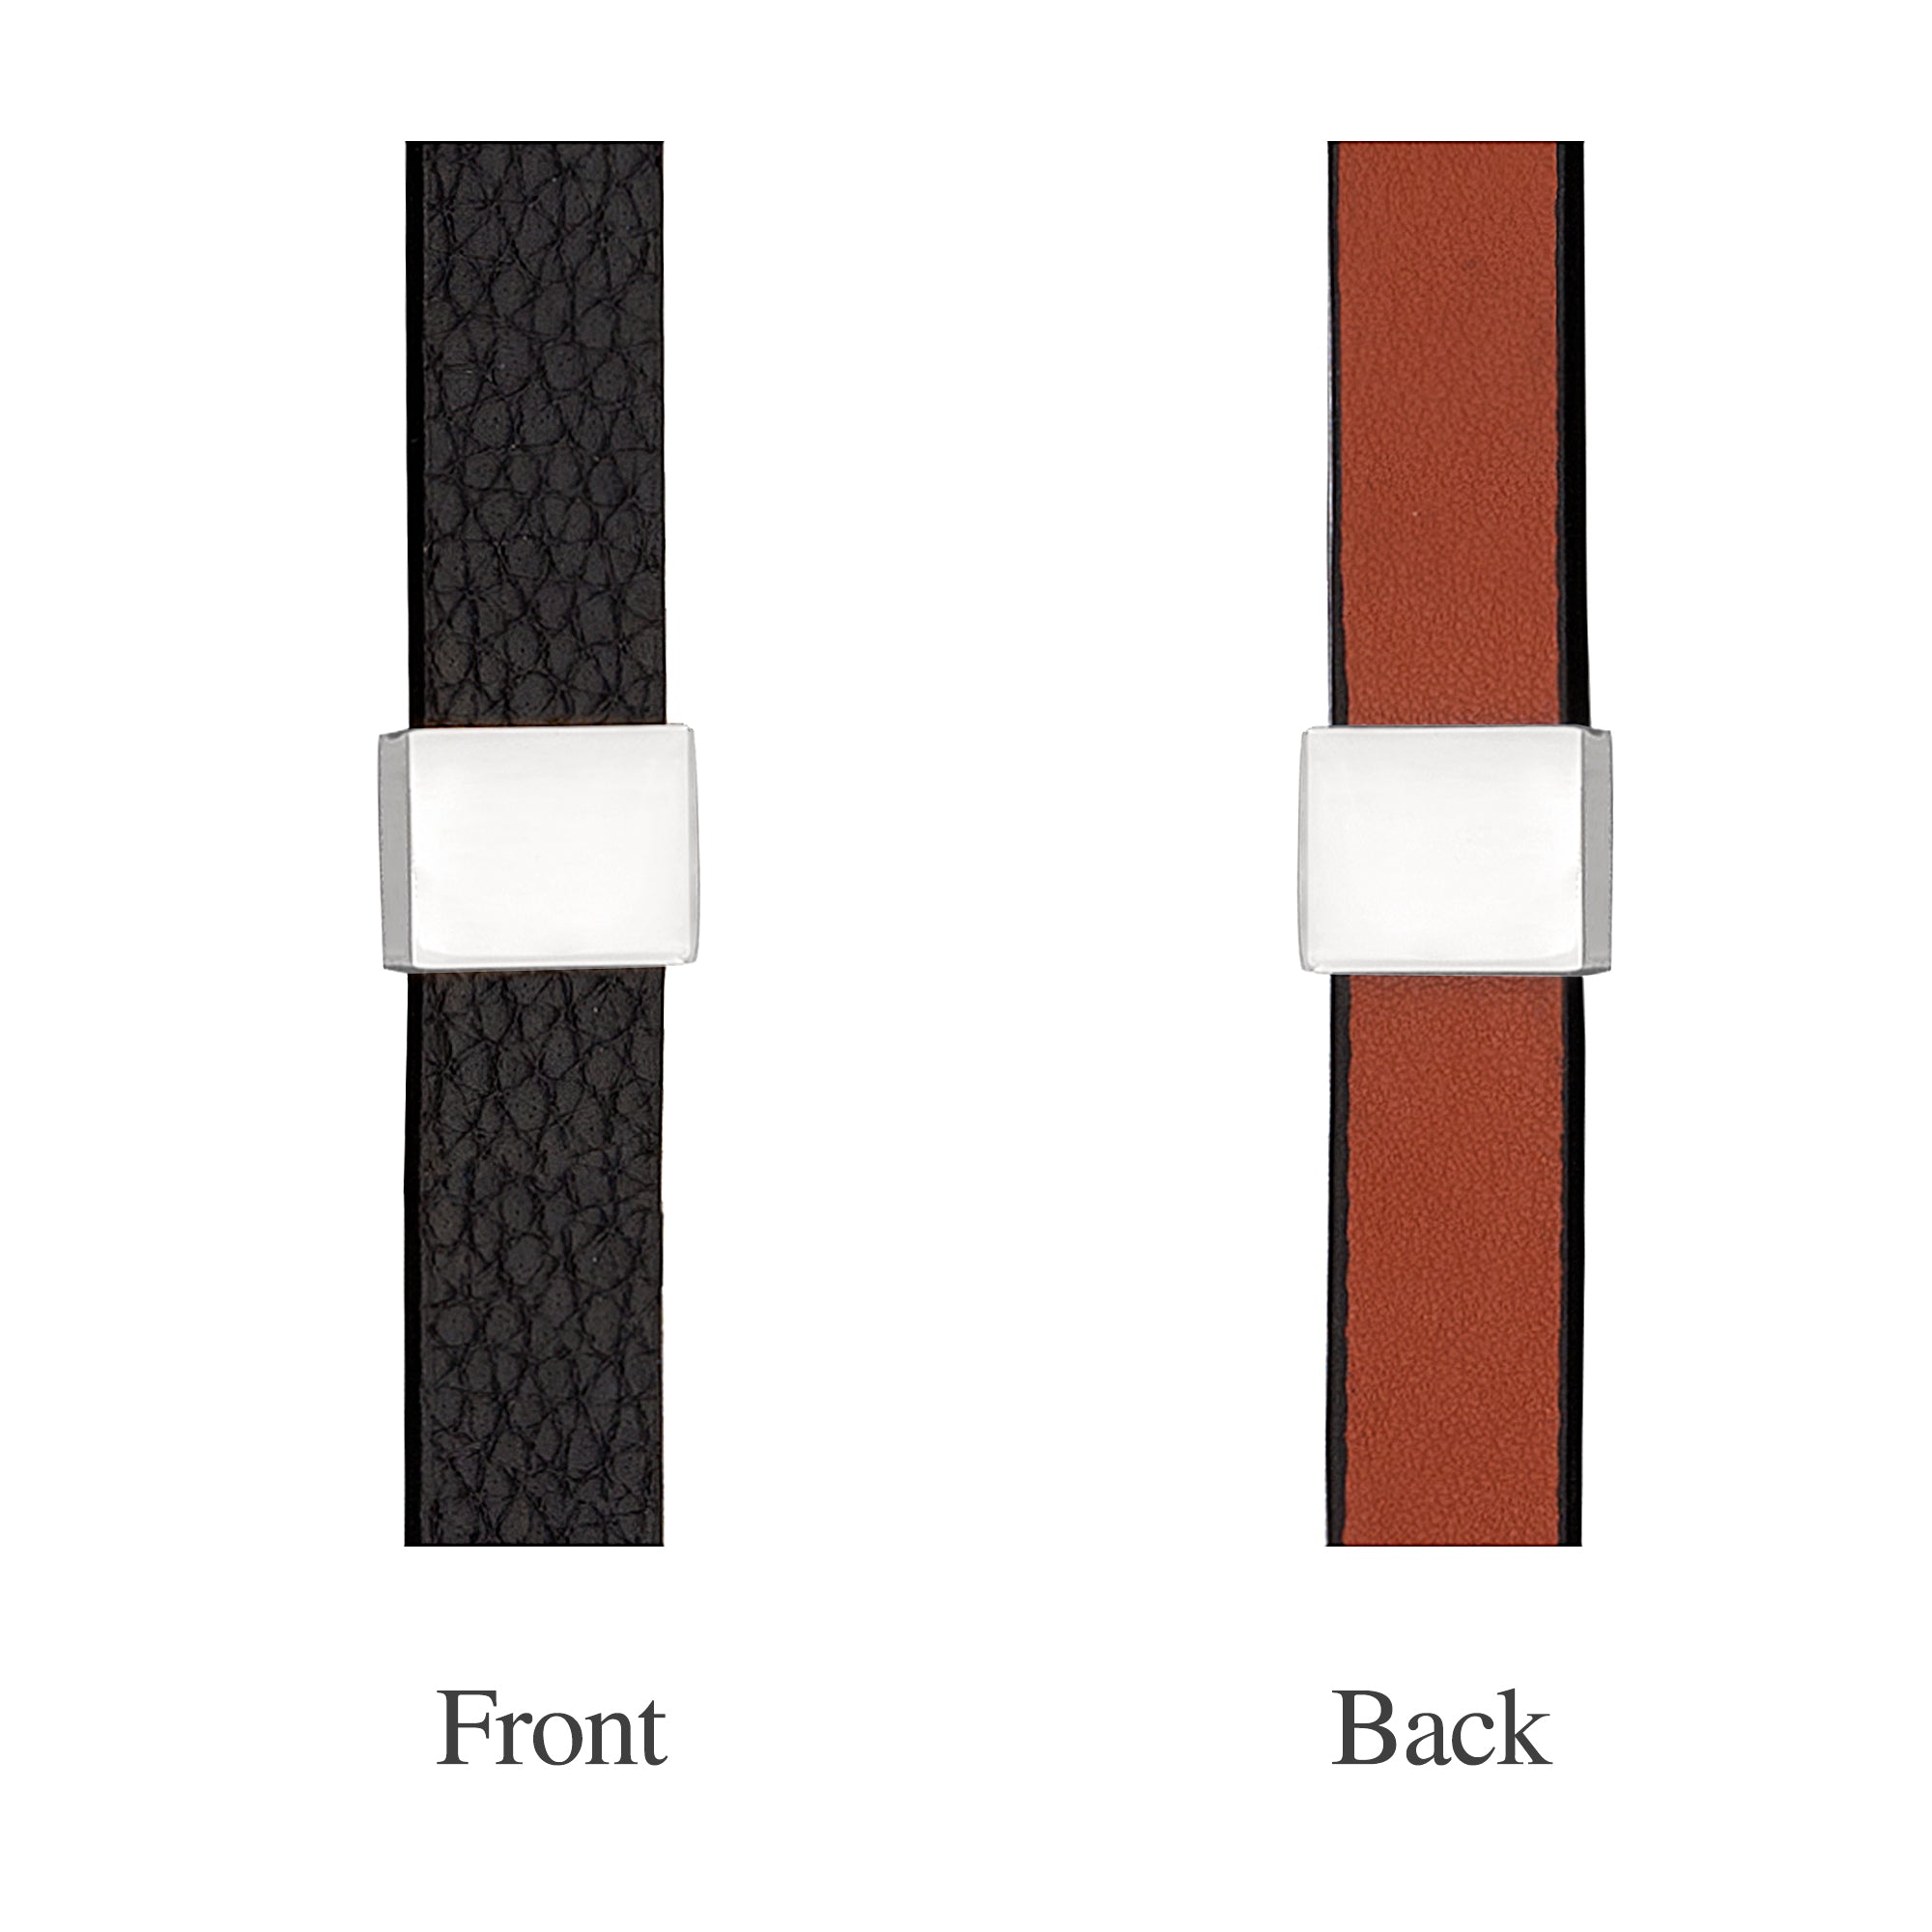 Mens black leather bracelet, mens leather bracelets UK